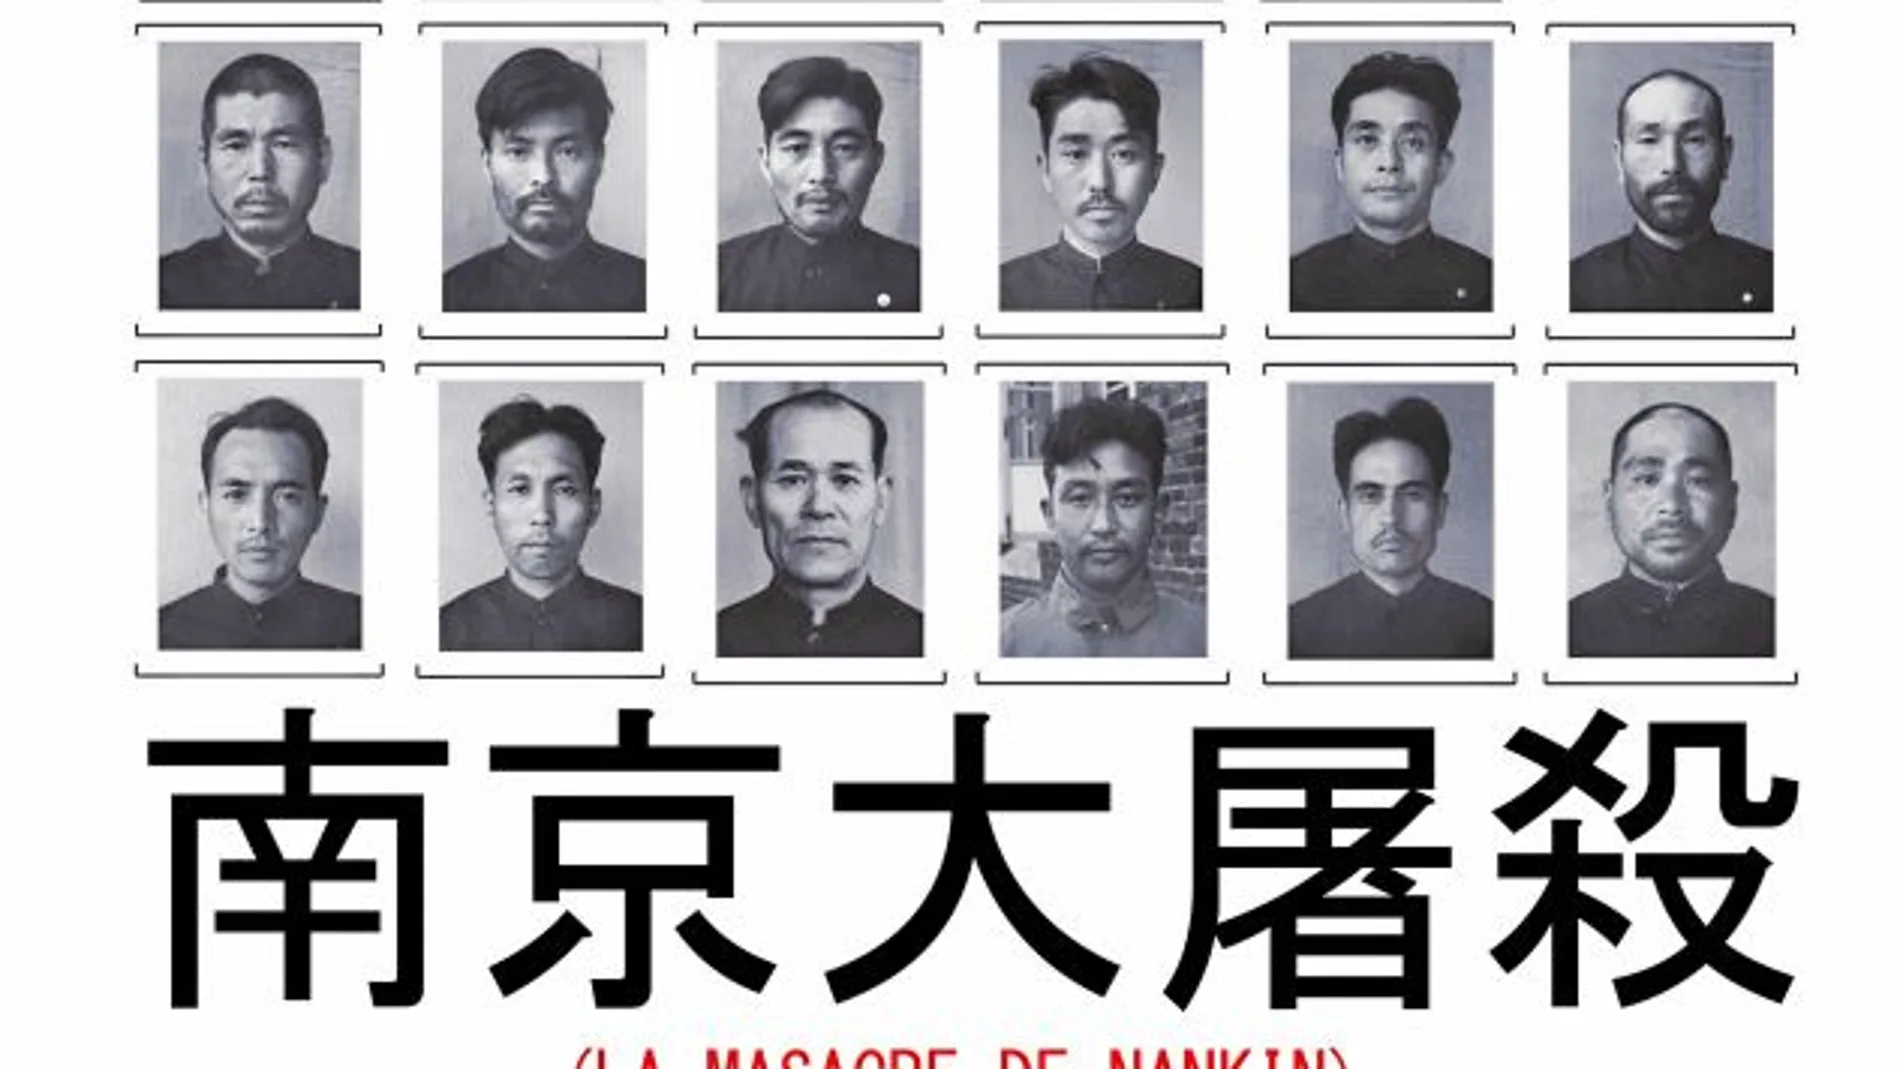 Rostros de algunos de los responsables confesos de los crímenes de Nankín